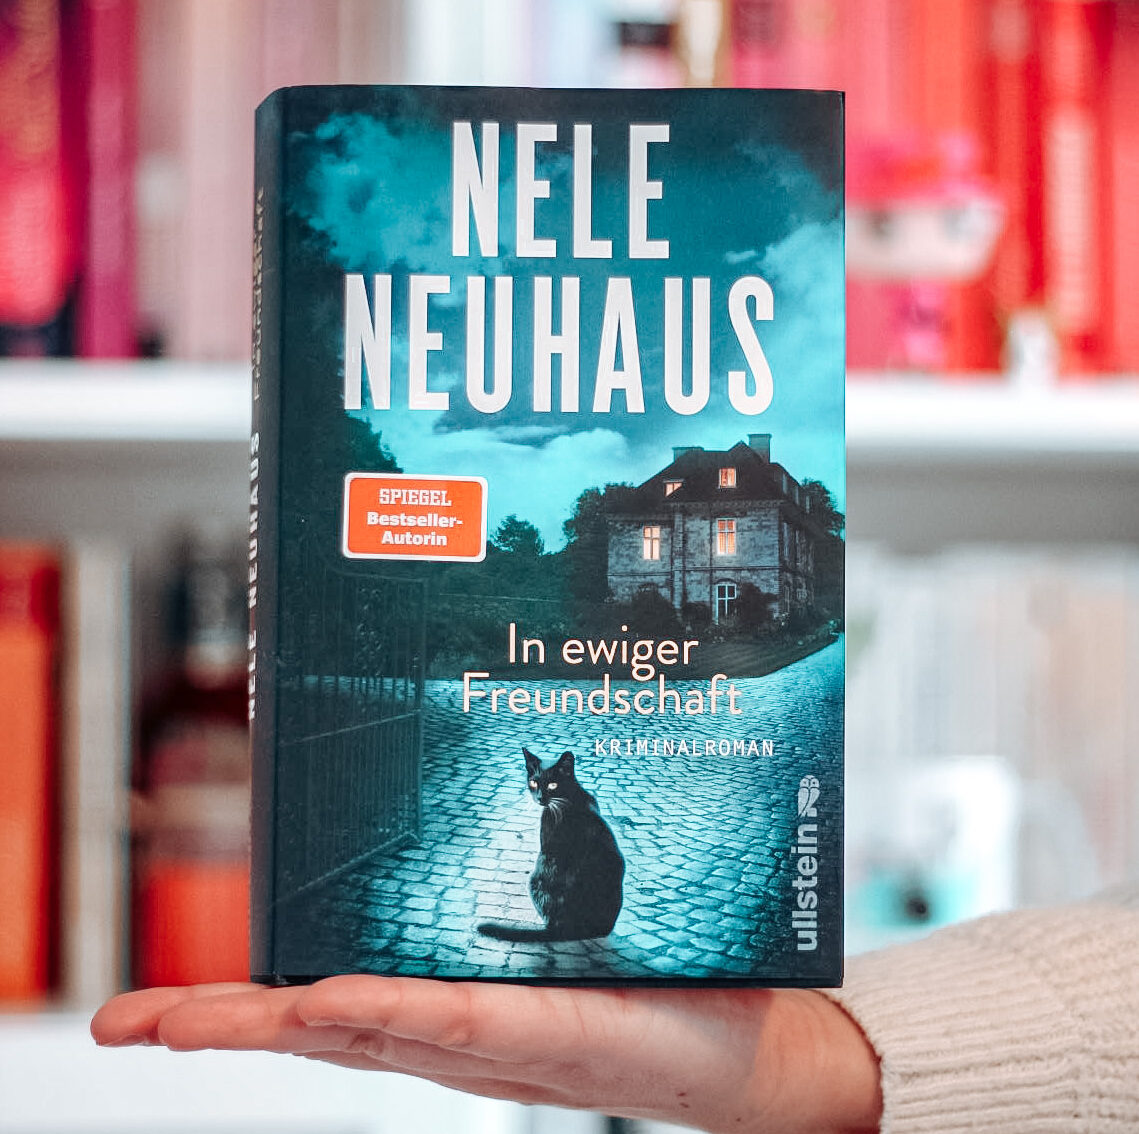 [All about the books] Nele Neuhaus – In ewiger Freundschaft